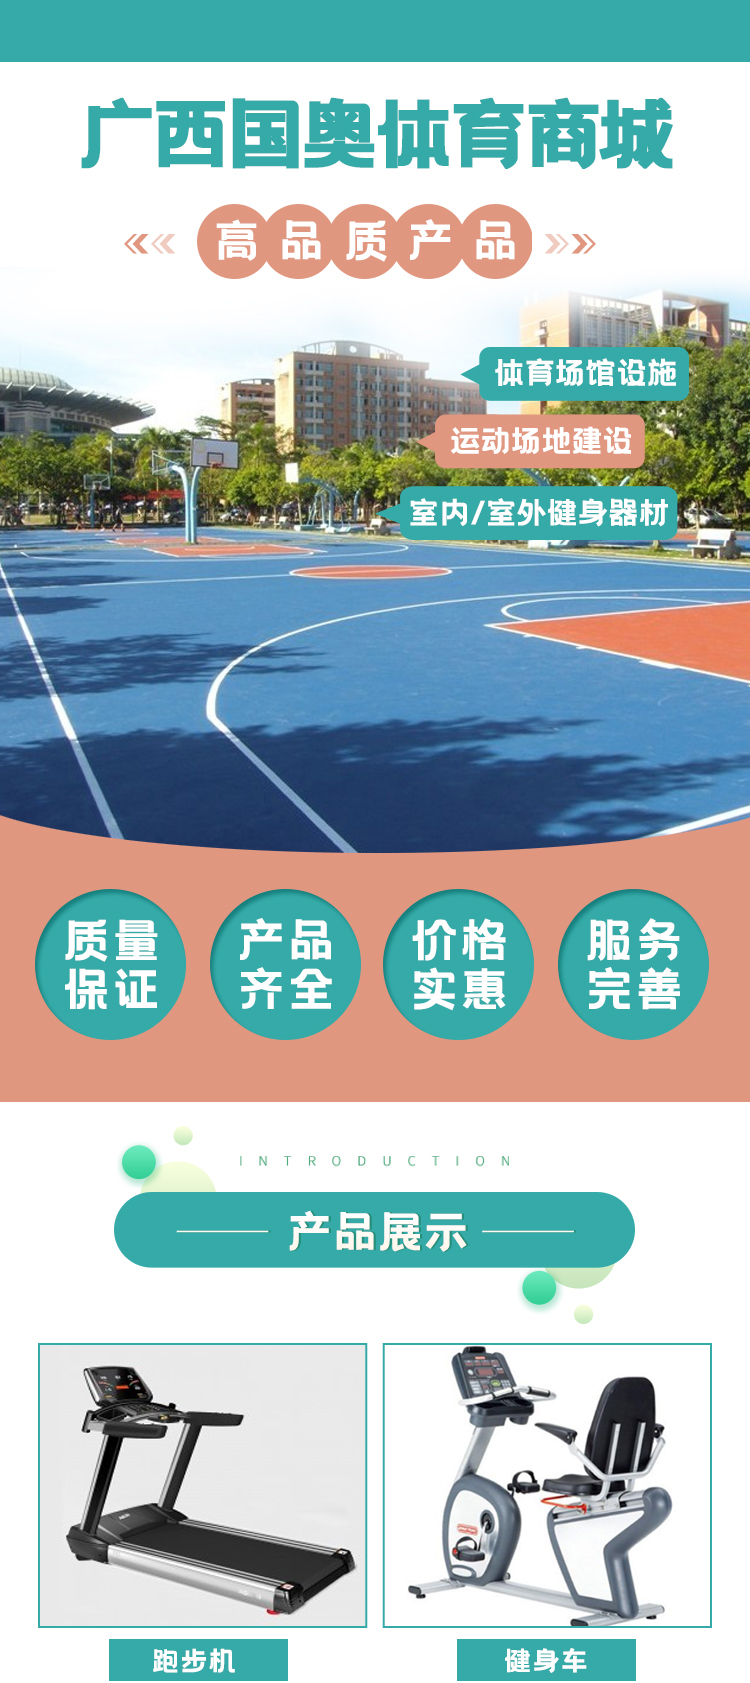 0713广西国奥体育用品有限公司(1)_01.jpg